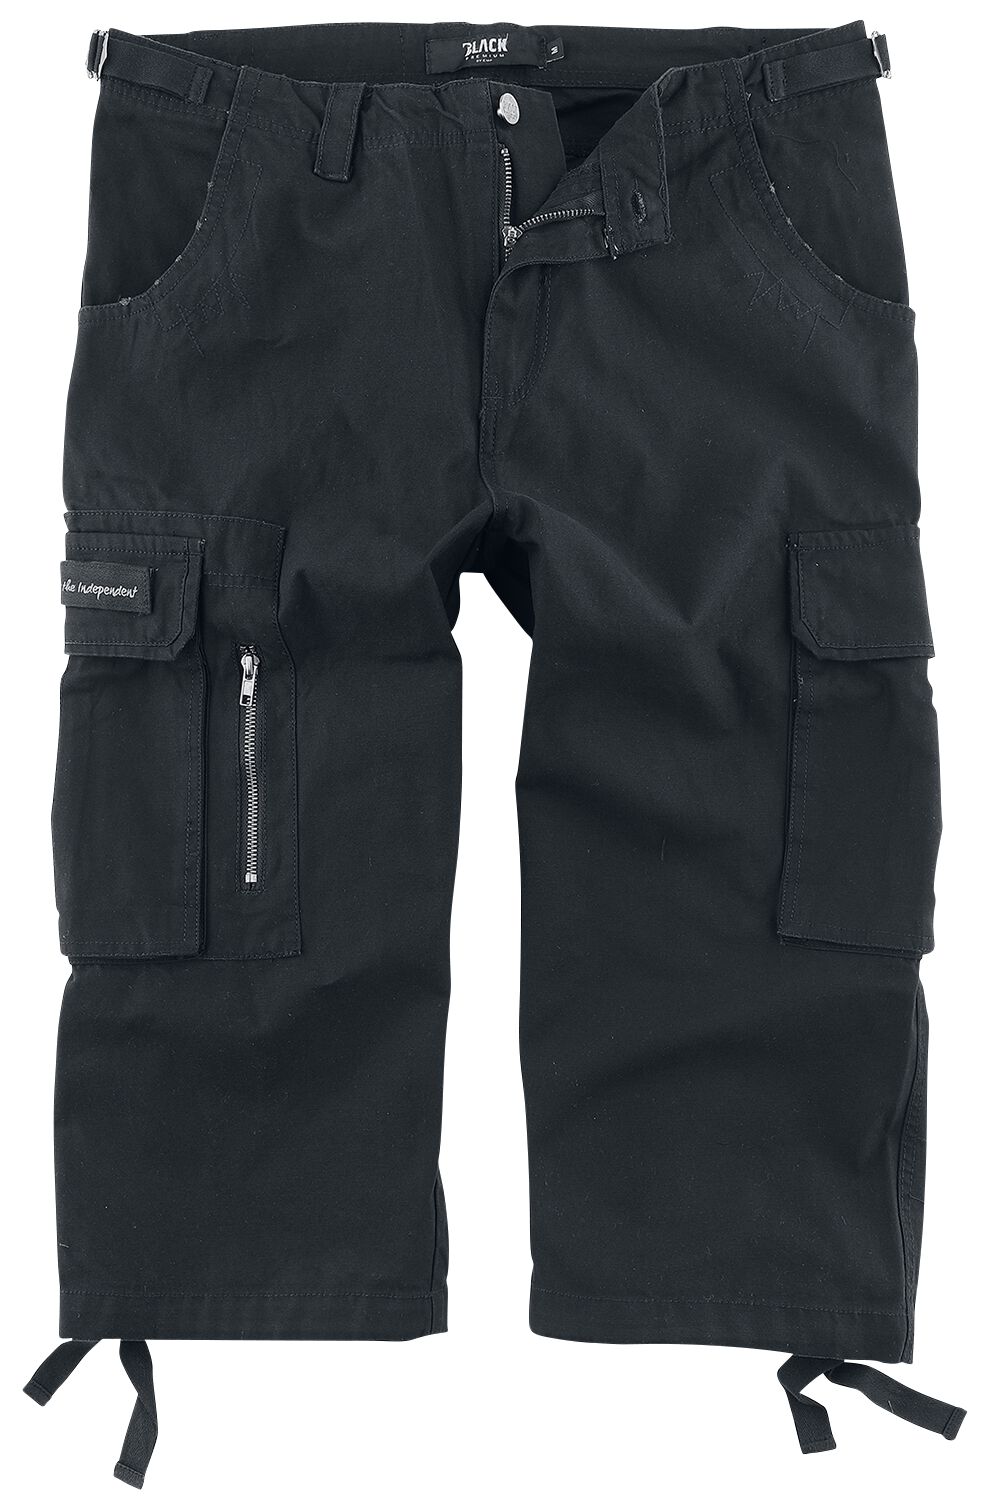 Black Premium by EMP Short - 3/4 Army Vintage Shorts - S bis 7XL - für Männer - Größe S - schwarz von Black Premium by EMP